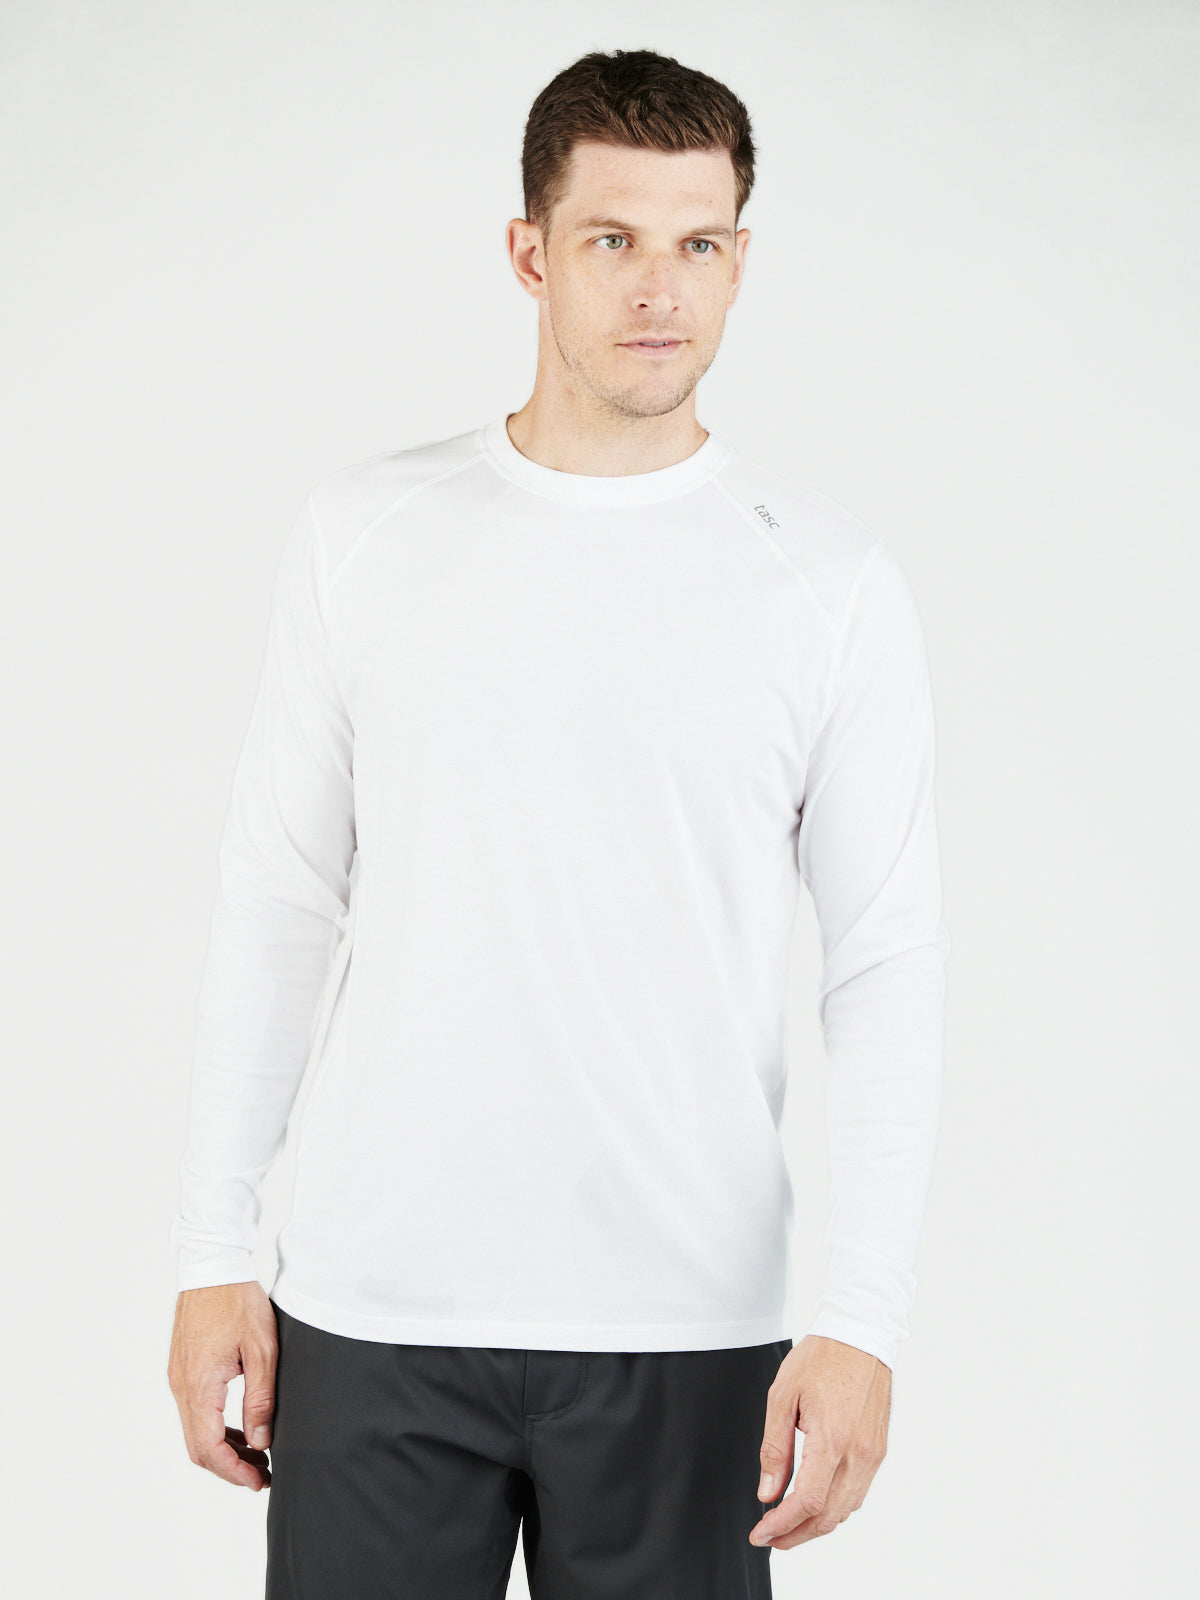 Tasc Men's Carrollton Long Sleeve Fitness T-Shirt Apparel Tasc White-100 Small 